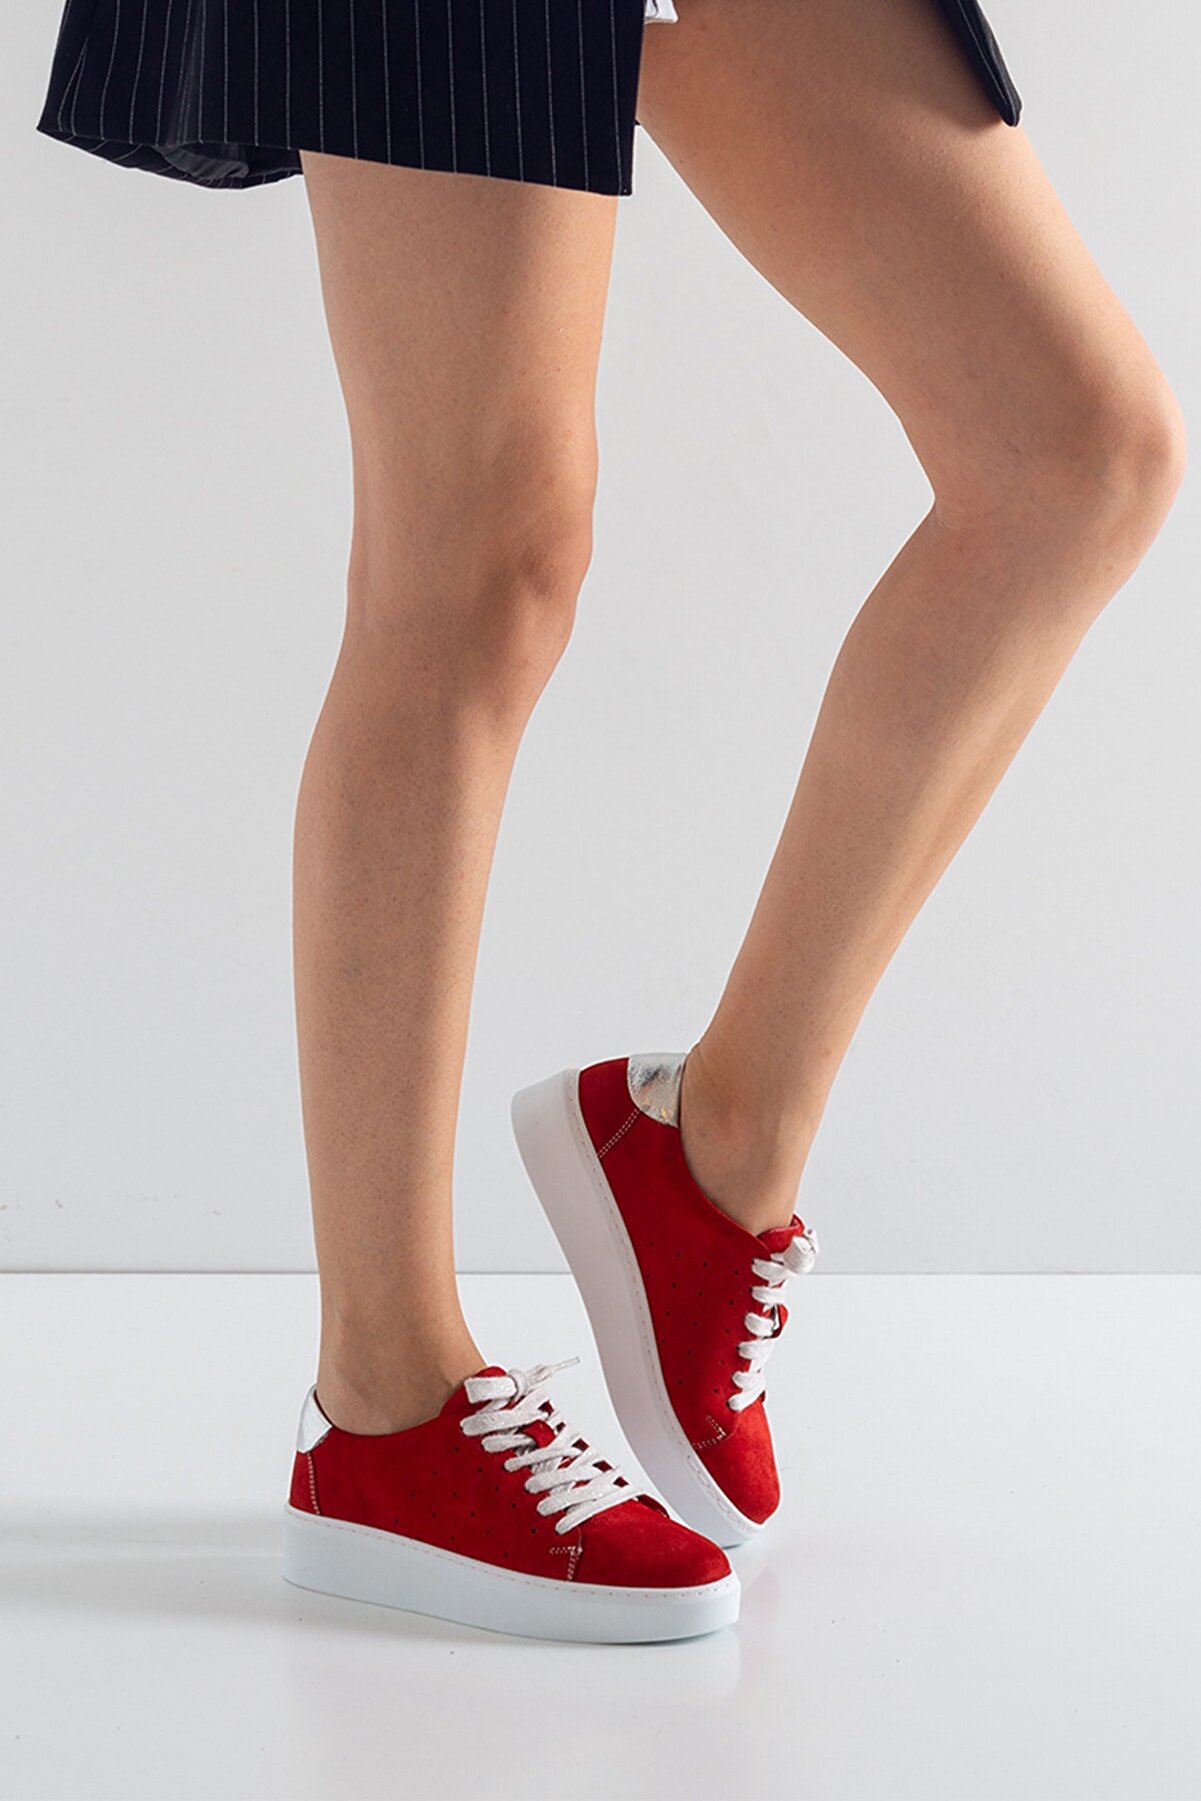 GRADA Kırmızı Hakiki Deri Süet Yanları Delikli Kadın Sneaker Ayakkabı